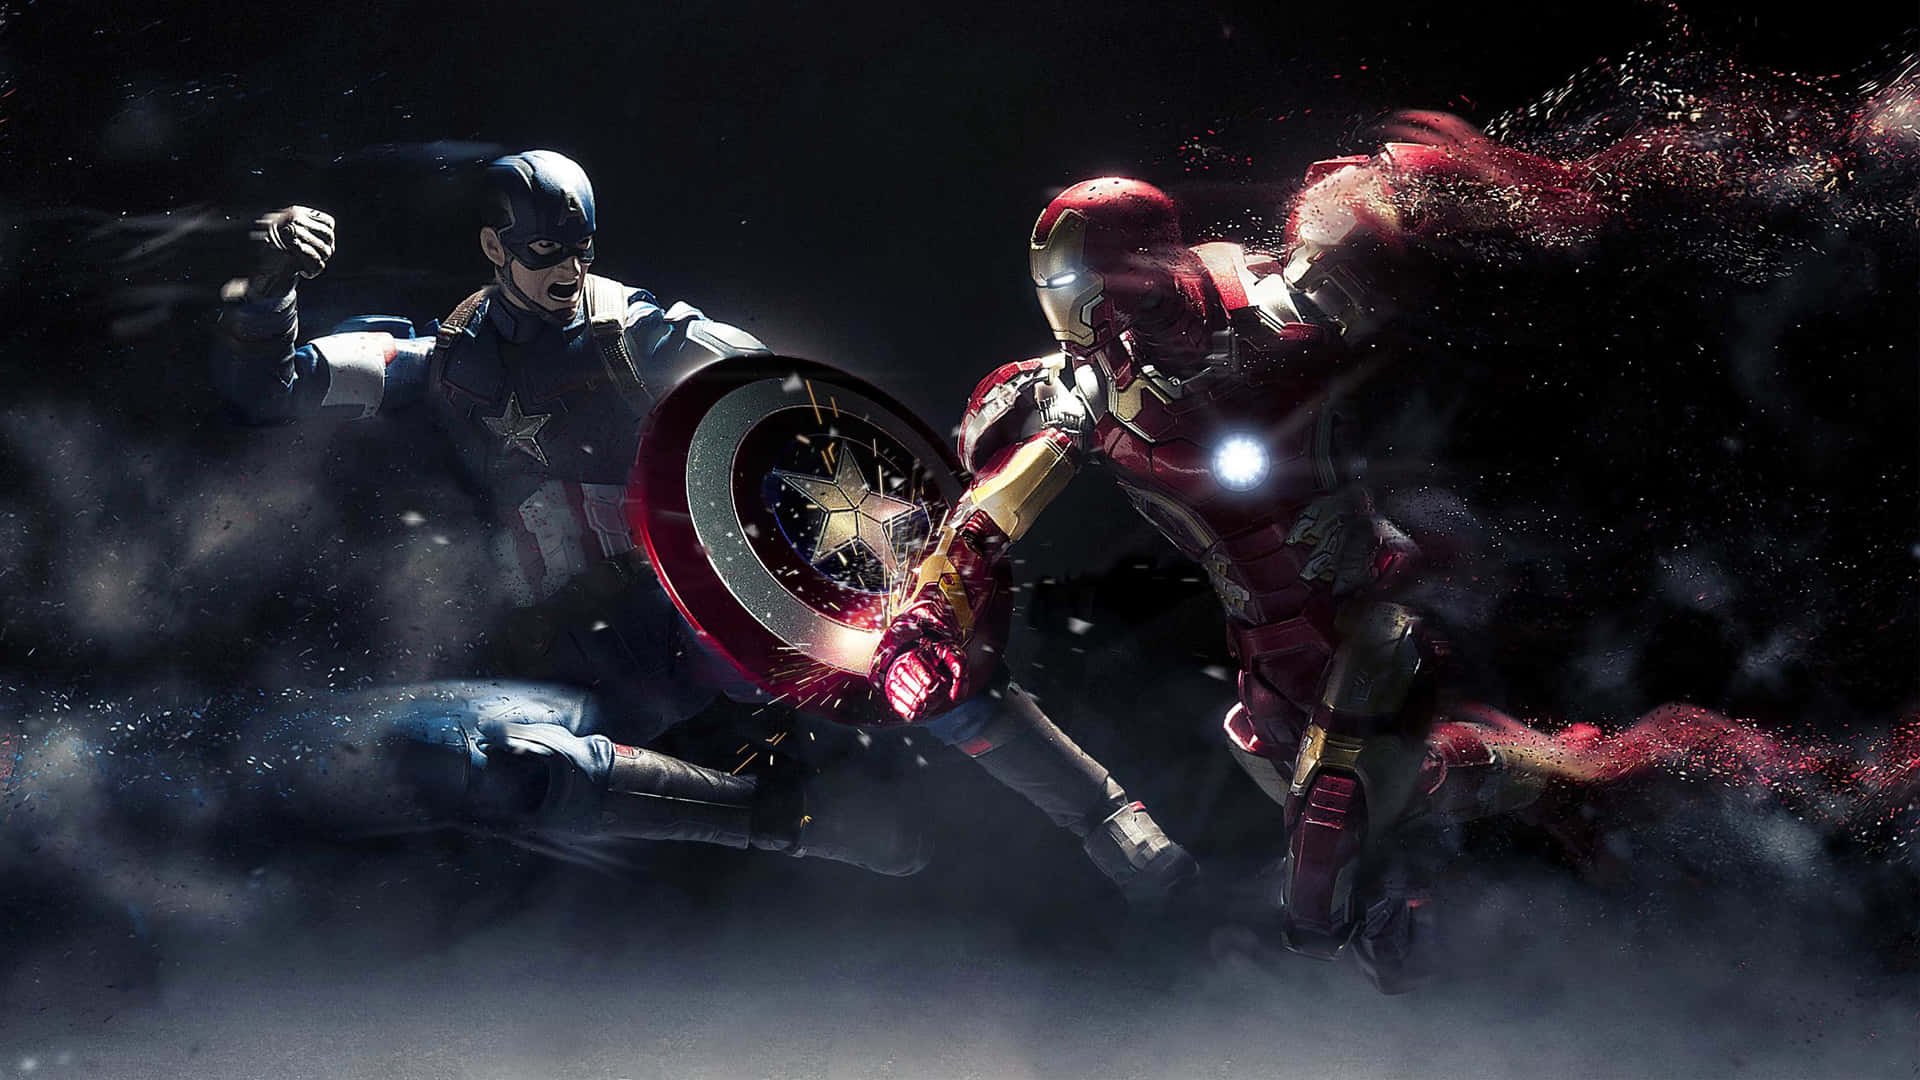 Hình nền đôi Captain America - Đón khởi đầu ngày mới với hình nền đôi Captain America đầy ấn tượng! Với thiết kế đẹp mắt và sắc nét, hình nền này chắc chắn sẽ khiến bạn hài lòng. Hãy nhanh tay tải về để cùng ngắm nhìn siêu anh hùng bảo vệ thế giới này nhé!